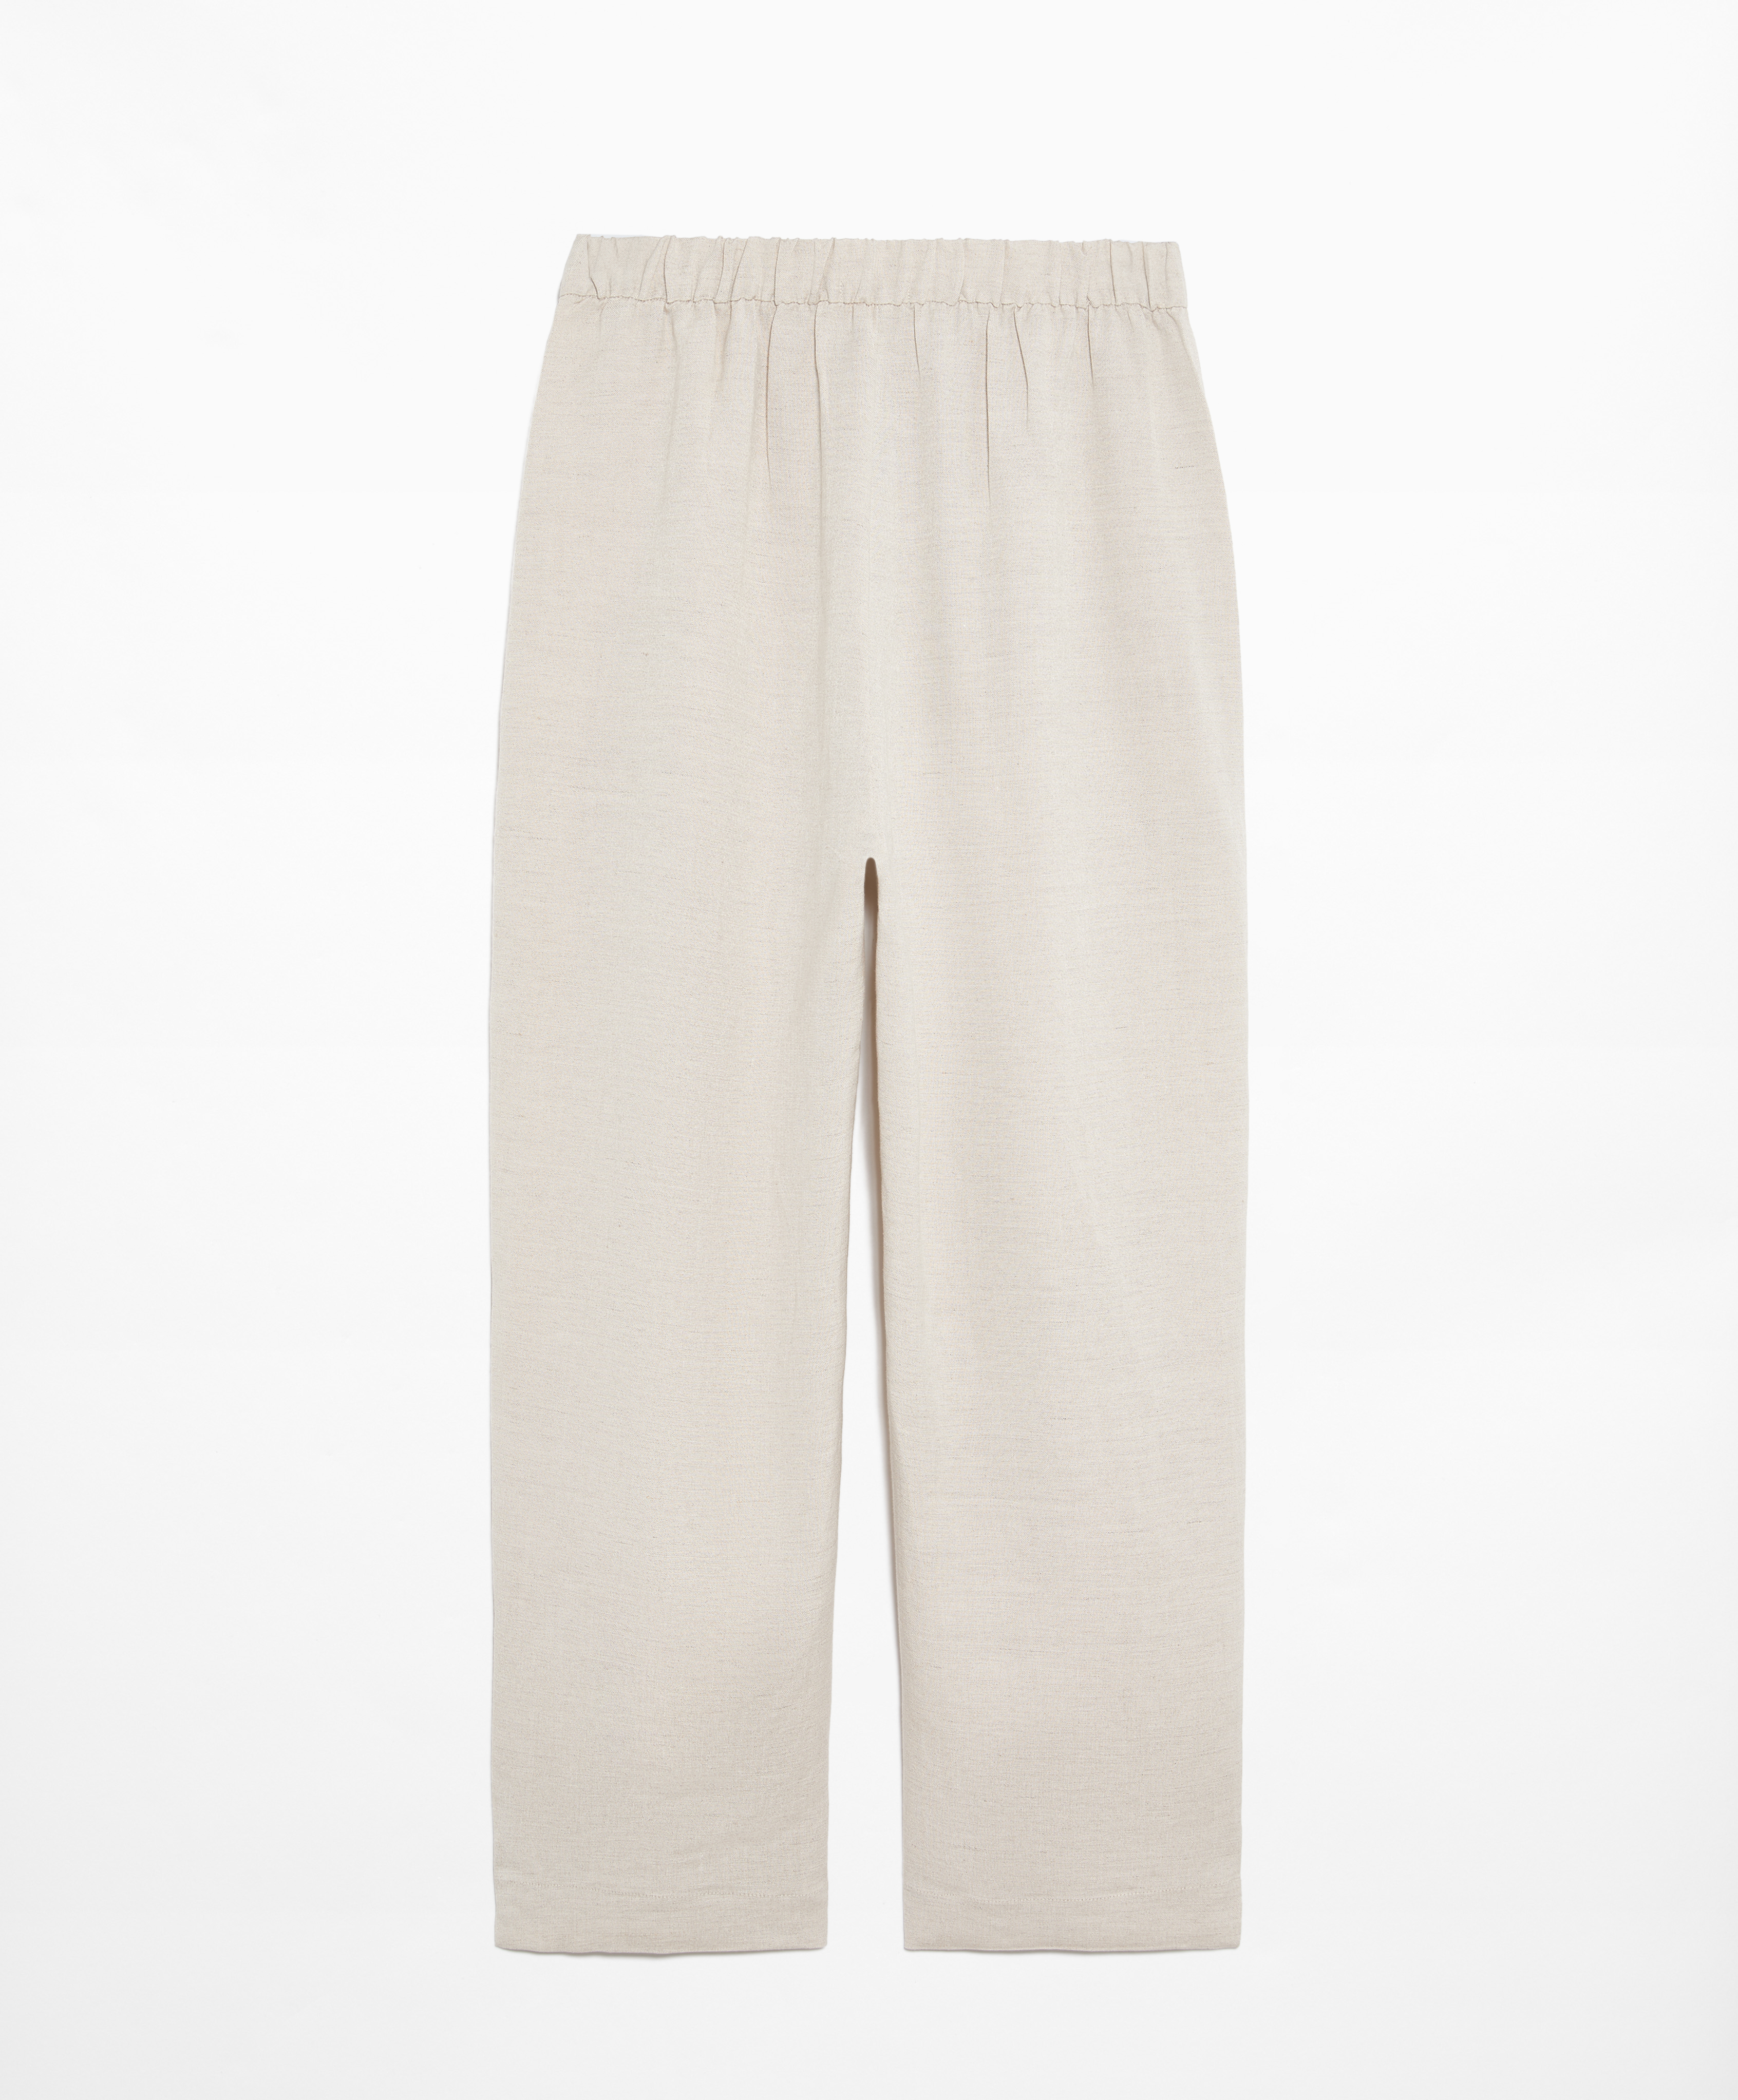 Pantalón largo slim fit con lino